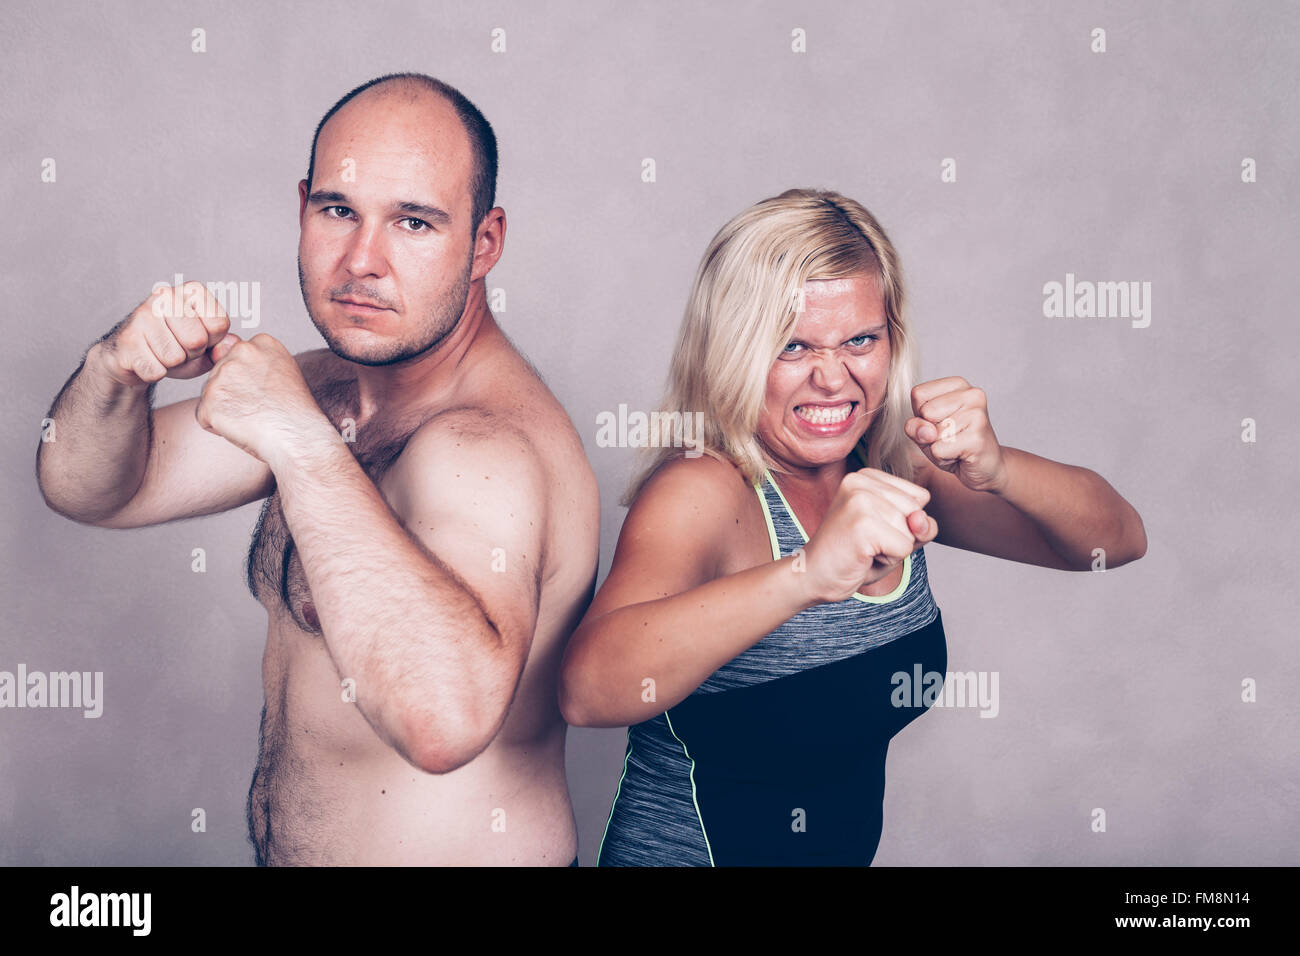 Retrato de pareja enojado agresivo posando juntos, dispuestos a luchar. Foto de stock